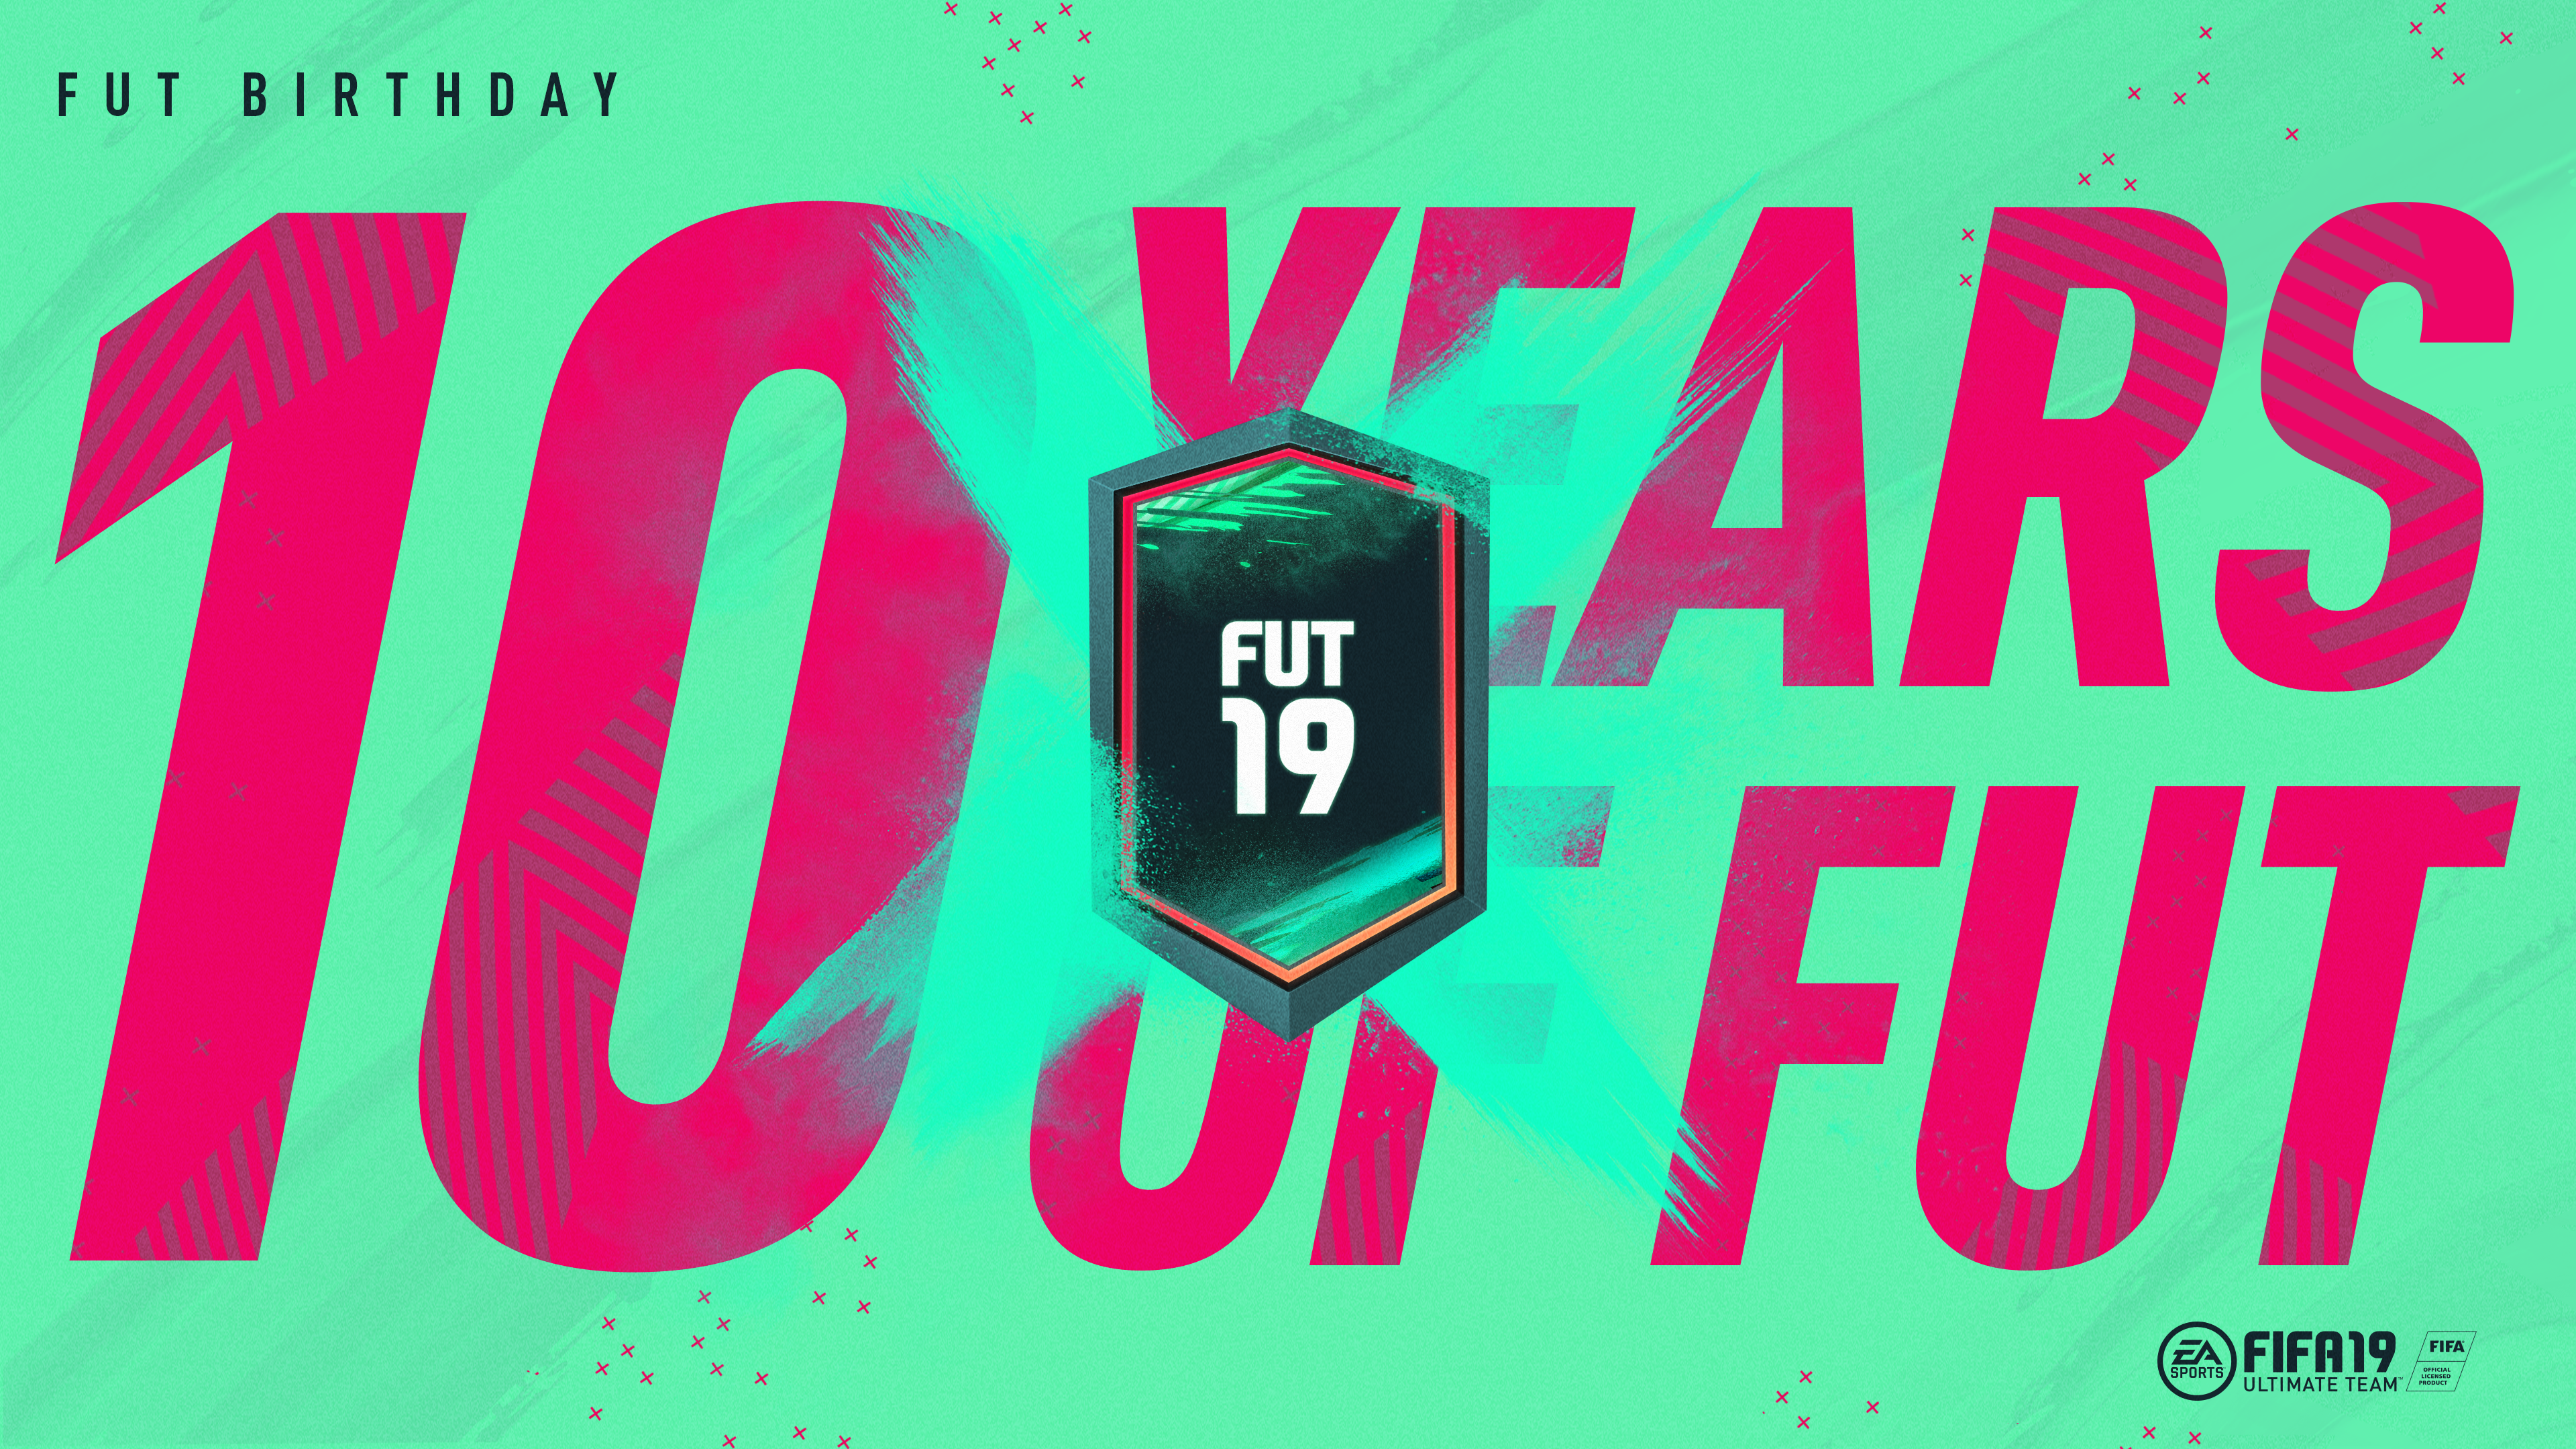 FIFA 19: FUT Birthday